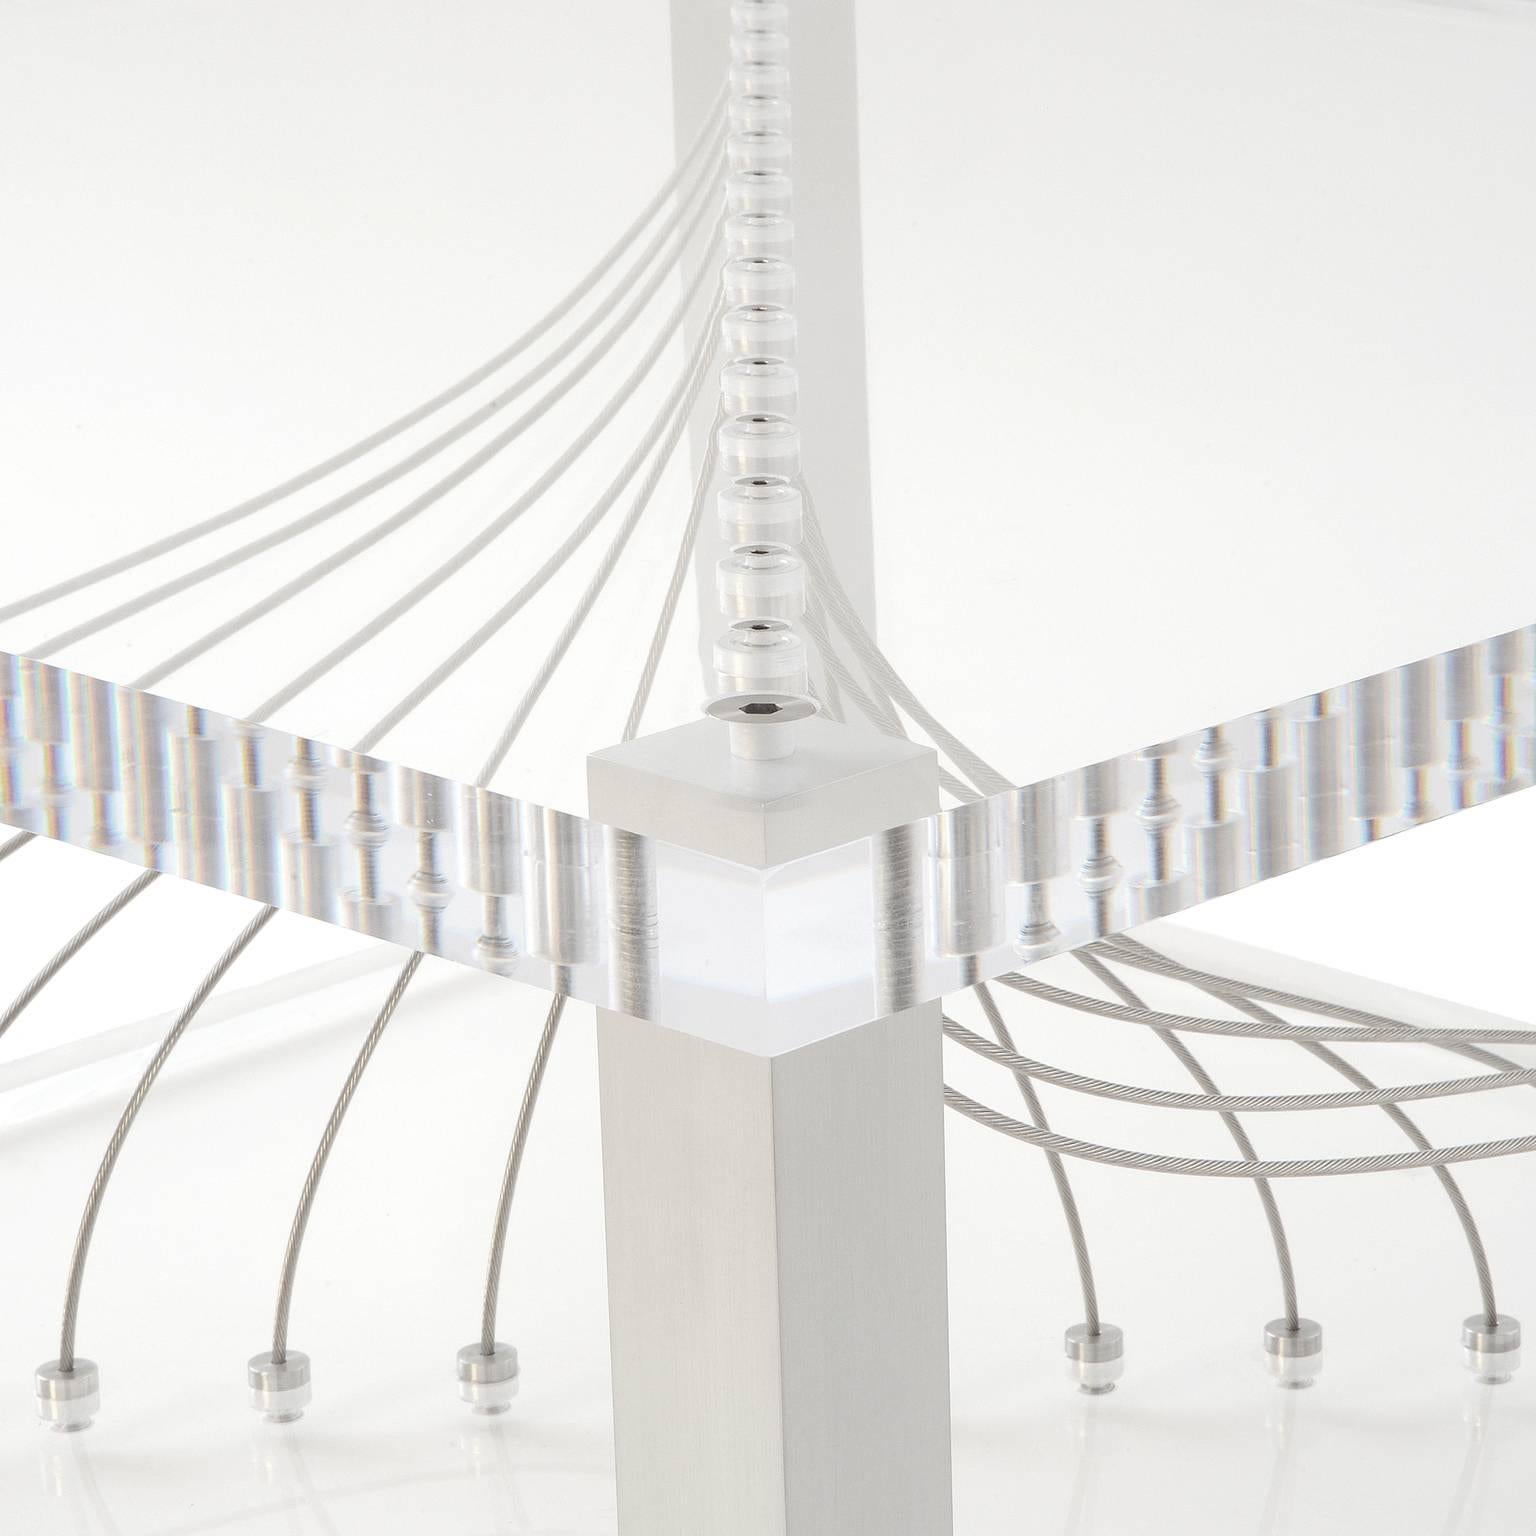 Acrylic Argon de Peter Harrison est une table basse étonnante fabriquée en acrylique de 1,5 pouce d'épaisseur, en aluminium et en câble d'acier inoxydable. Les câbles sont intégrés individuellement pour créer une expérience visuelle étonnante. Les